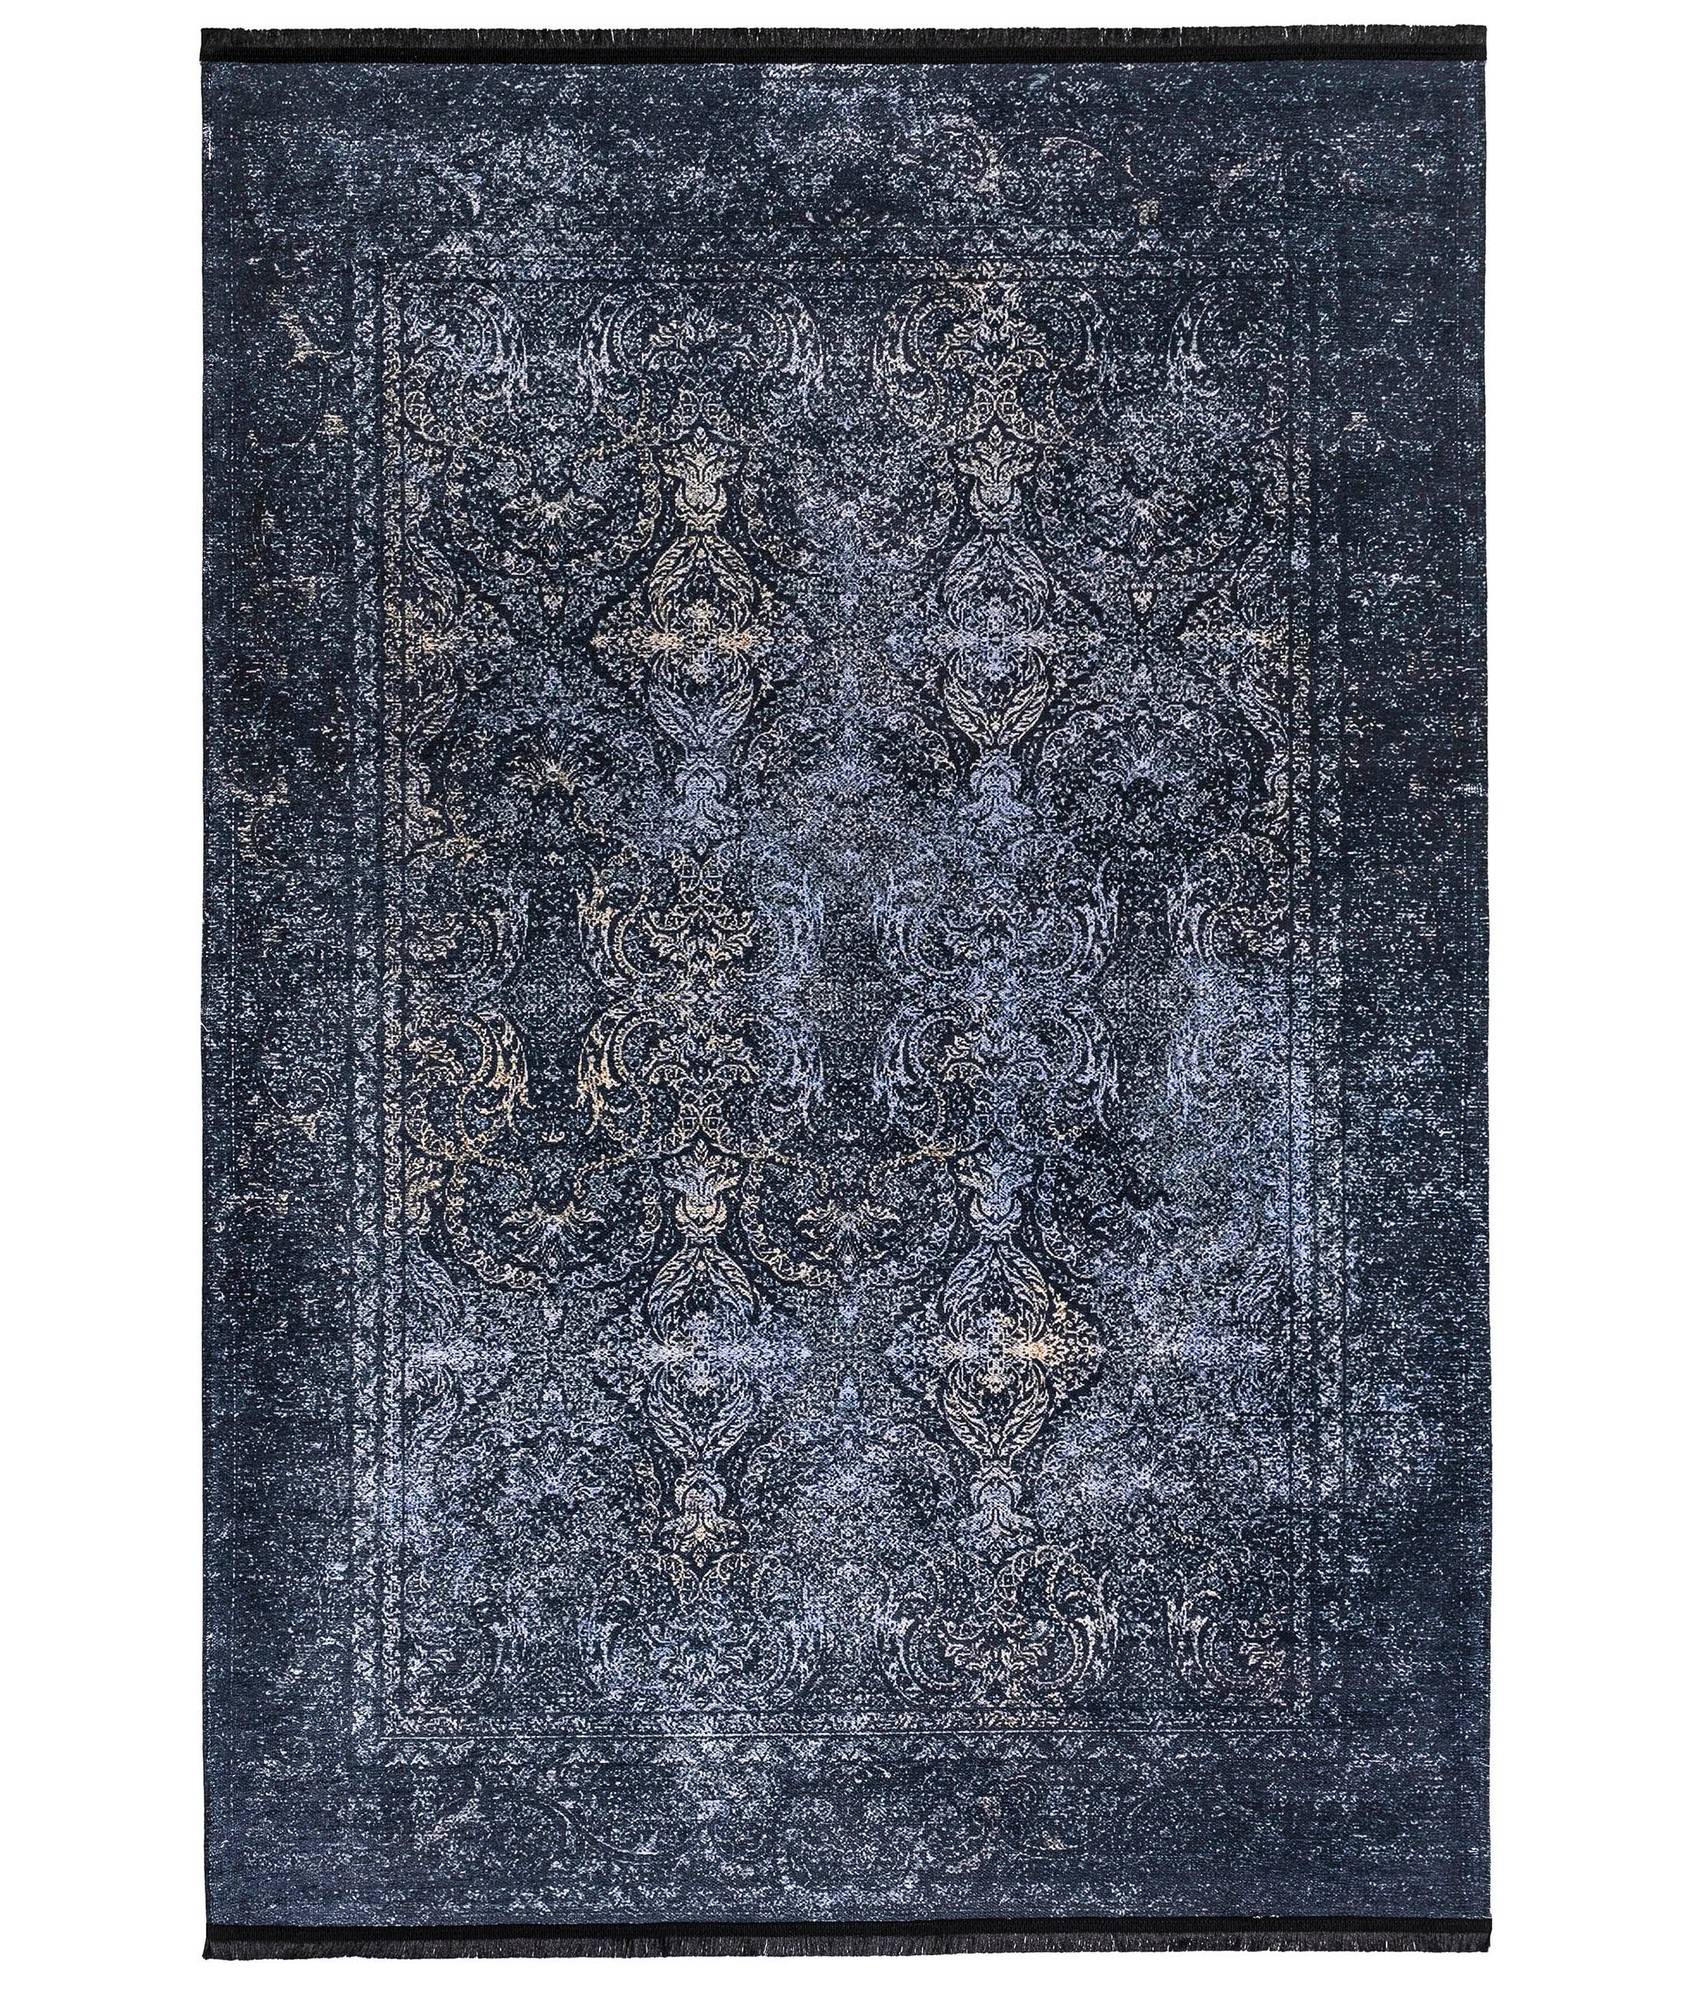 Hadorn Teppich 100x200cm Viktorianisches Muster Blau und Schwarz